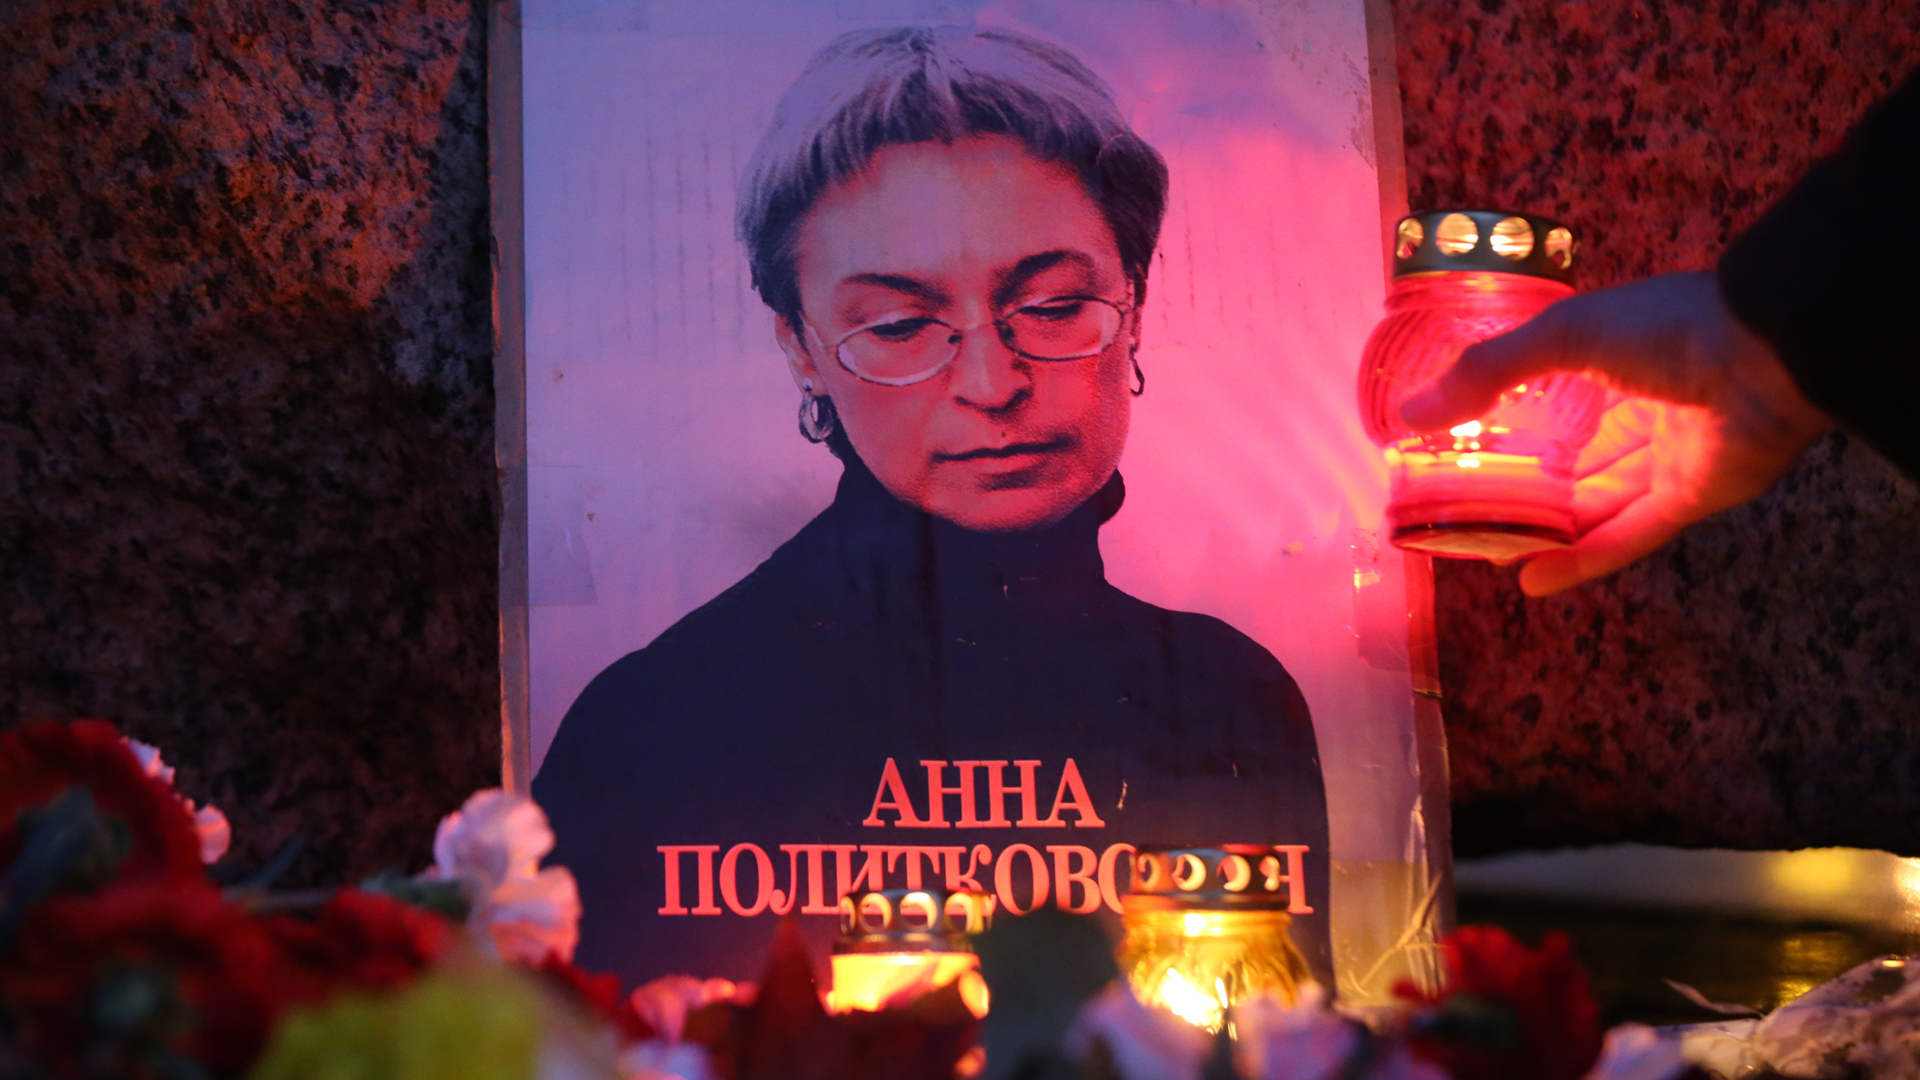 Grablichter und ein Foto erinnern an die 2006 ermordete Journalistin Anna Politkowskaja.